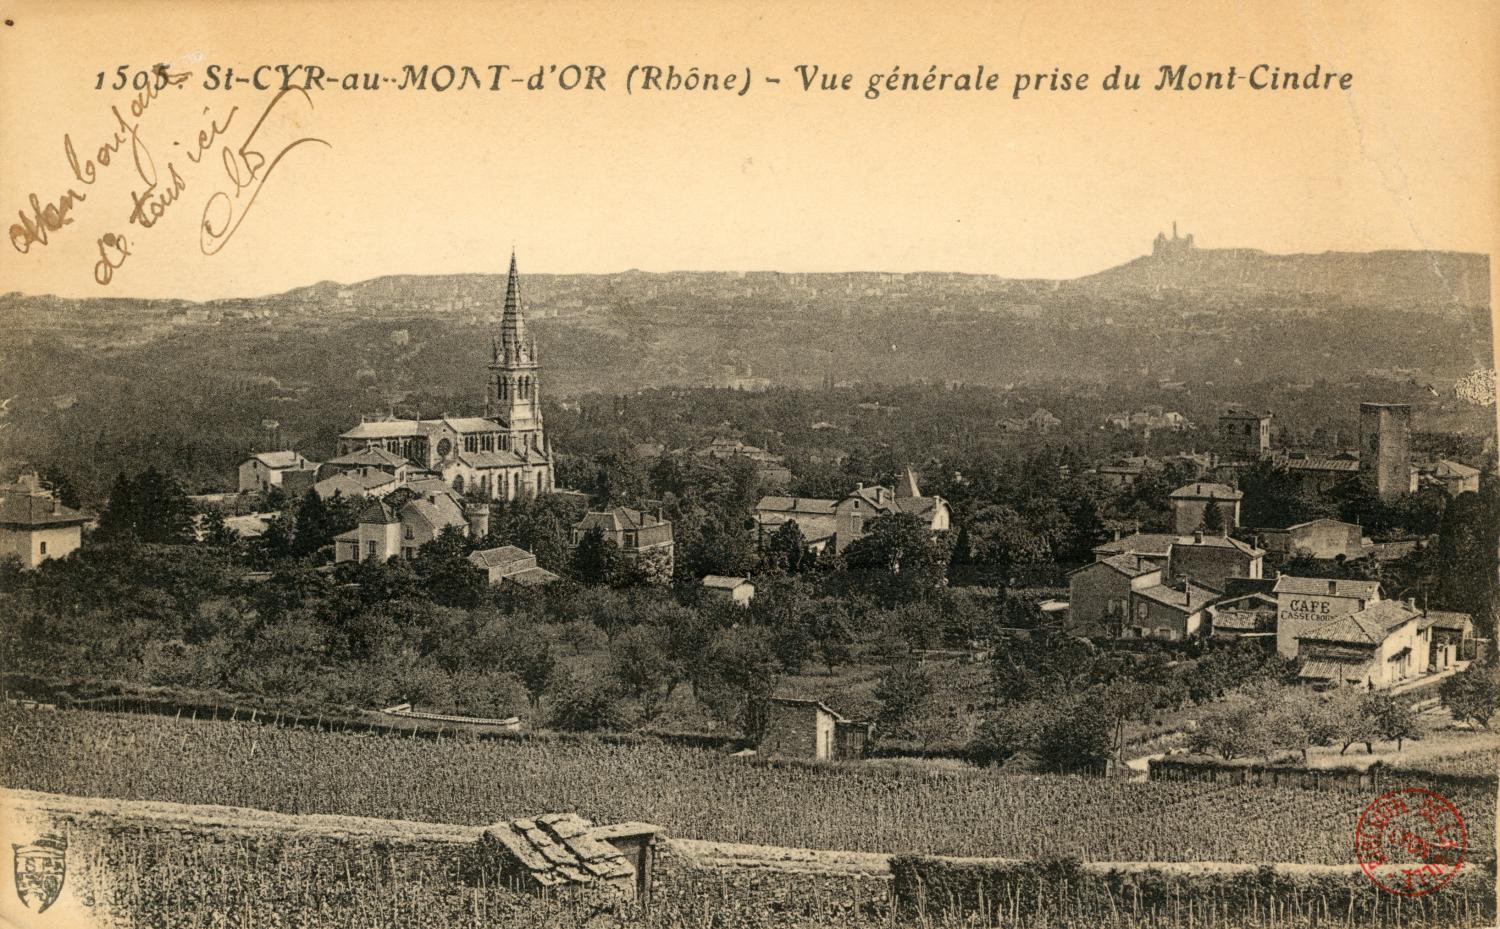 St-Cyr-au-Mont-d'Or (Rhône). - Vue générale prise du Mont-Cindre